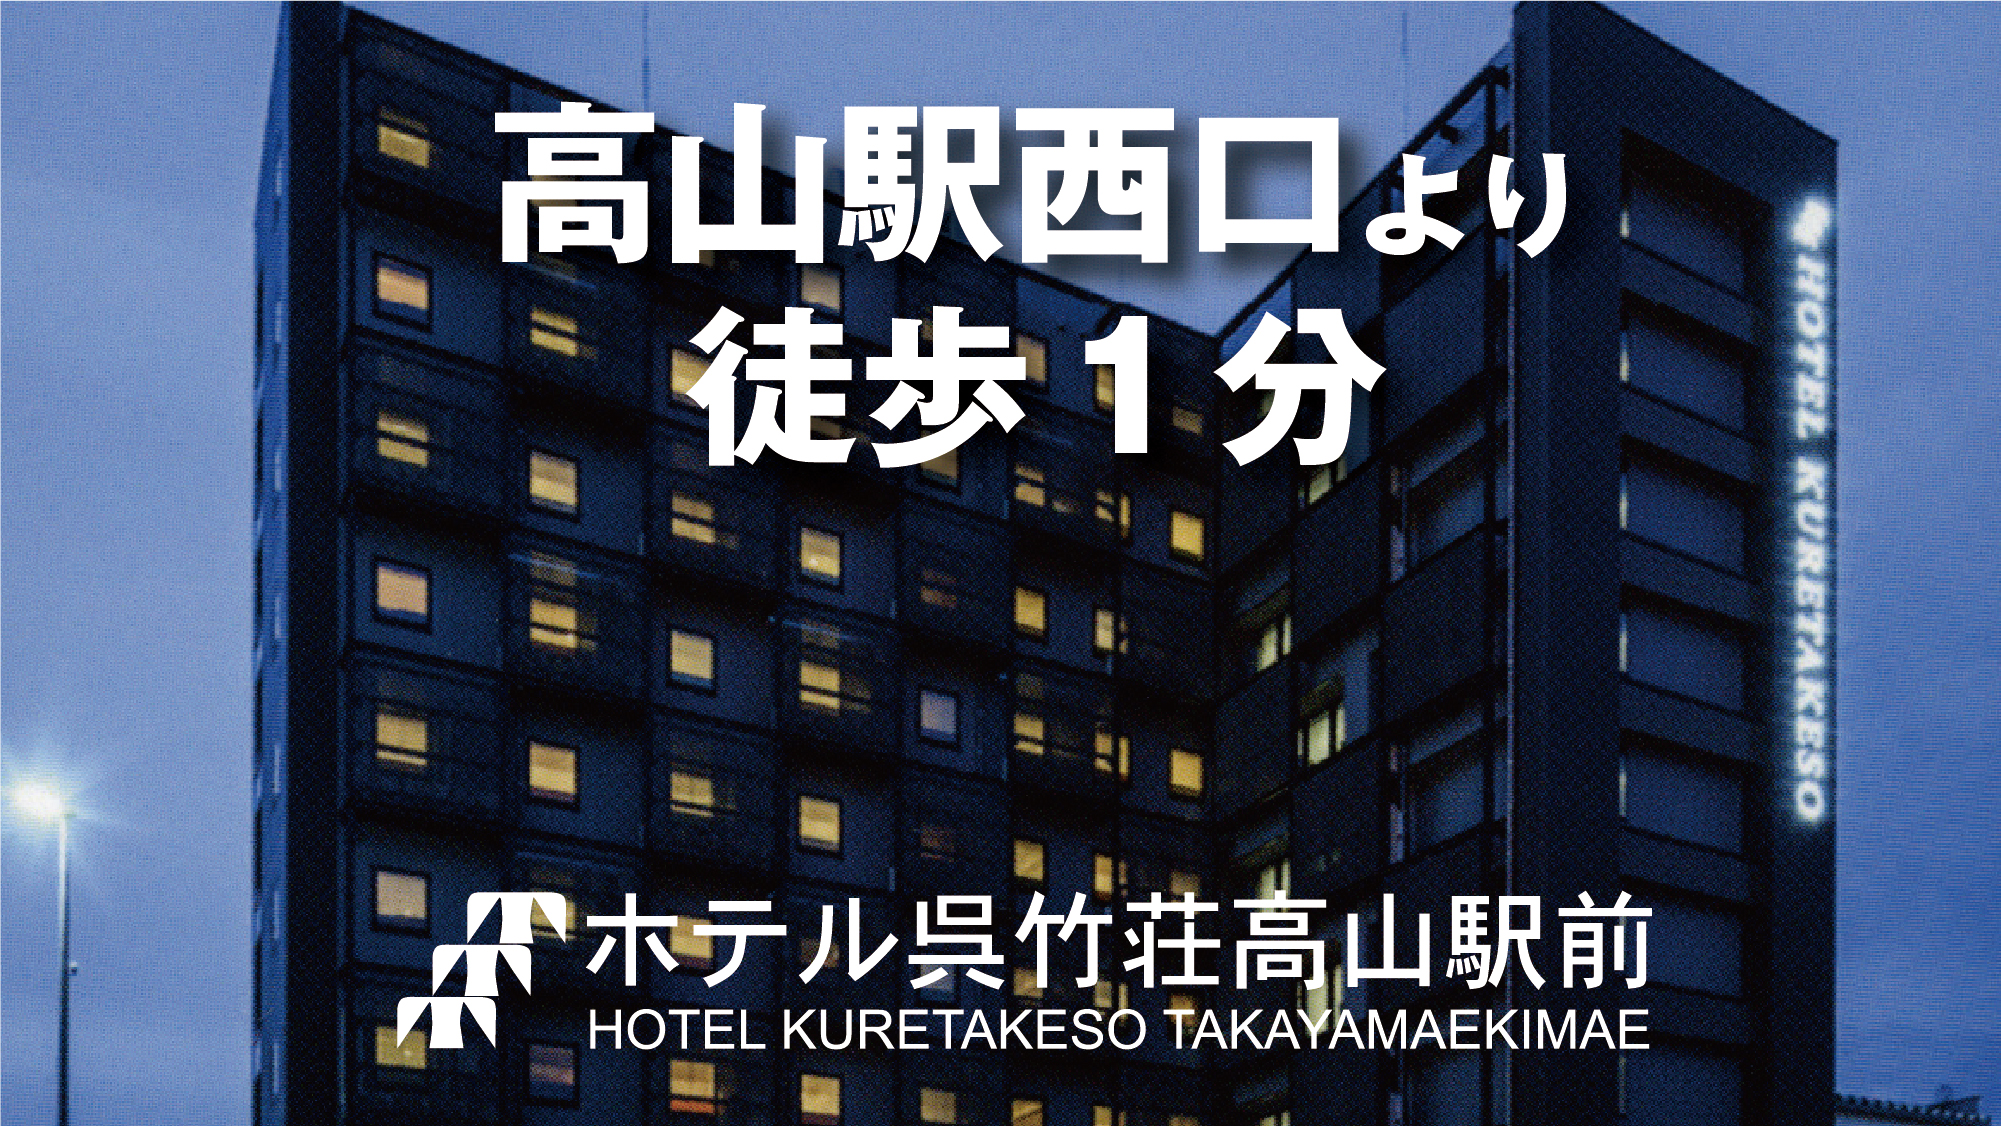 호텔 구레타케소 다카야마 에키마에